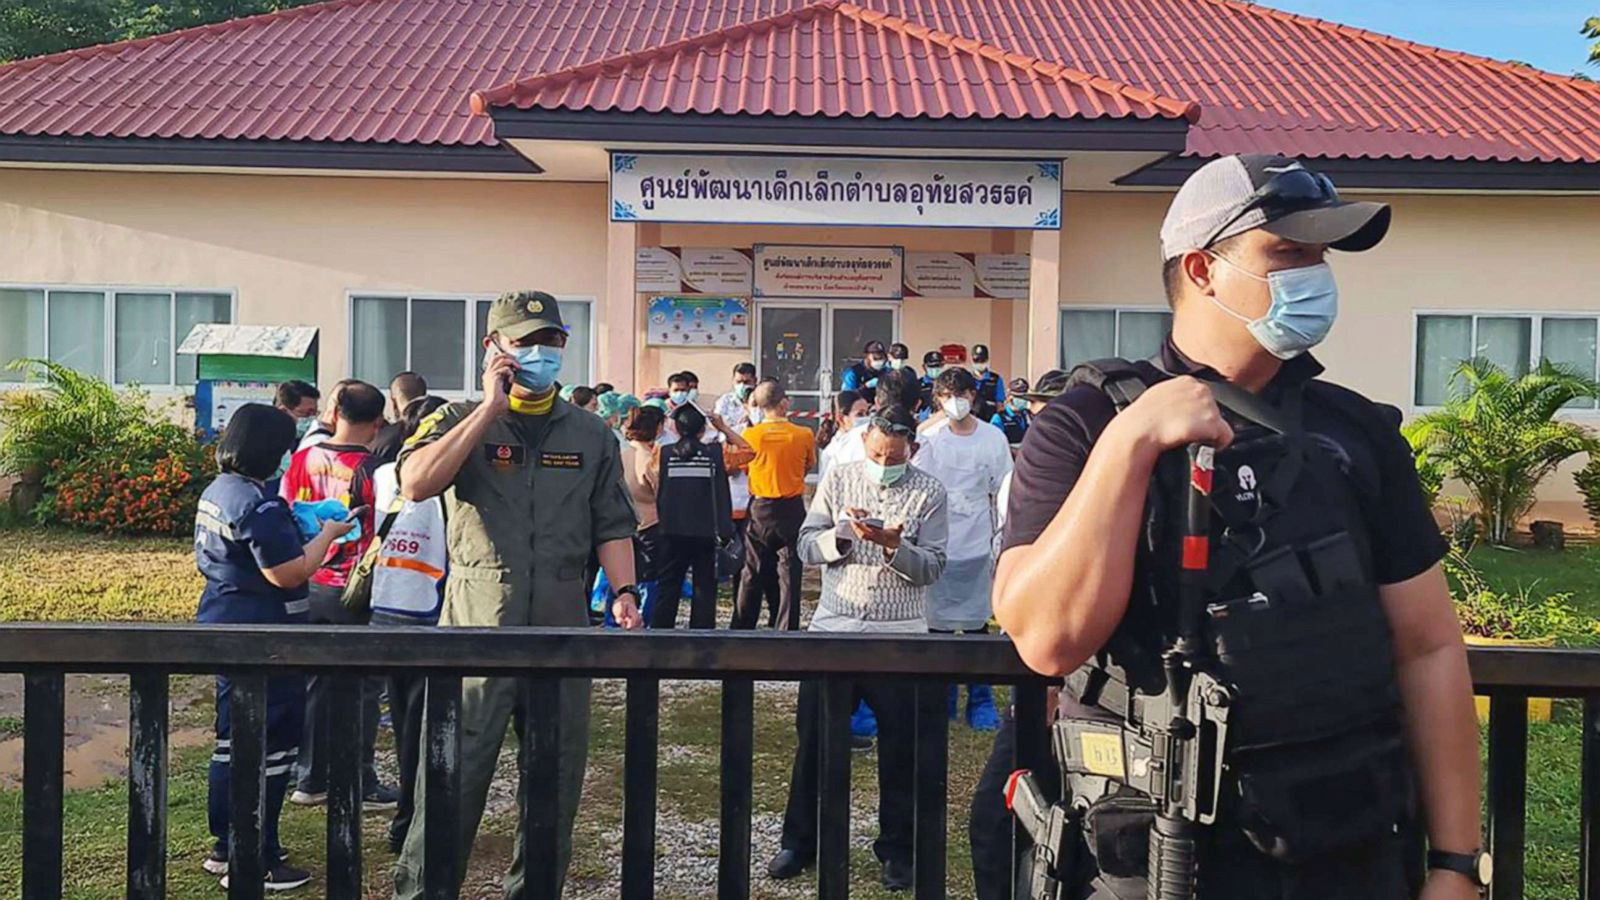 Vụ tấn công nhà trẻ ở Thái Lan: Công bố thêm nhiều tình tiết mới về hung thủ  - Ảnh 4.